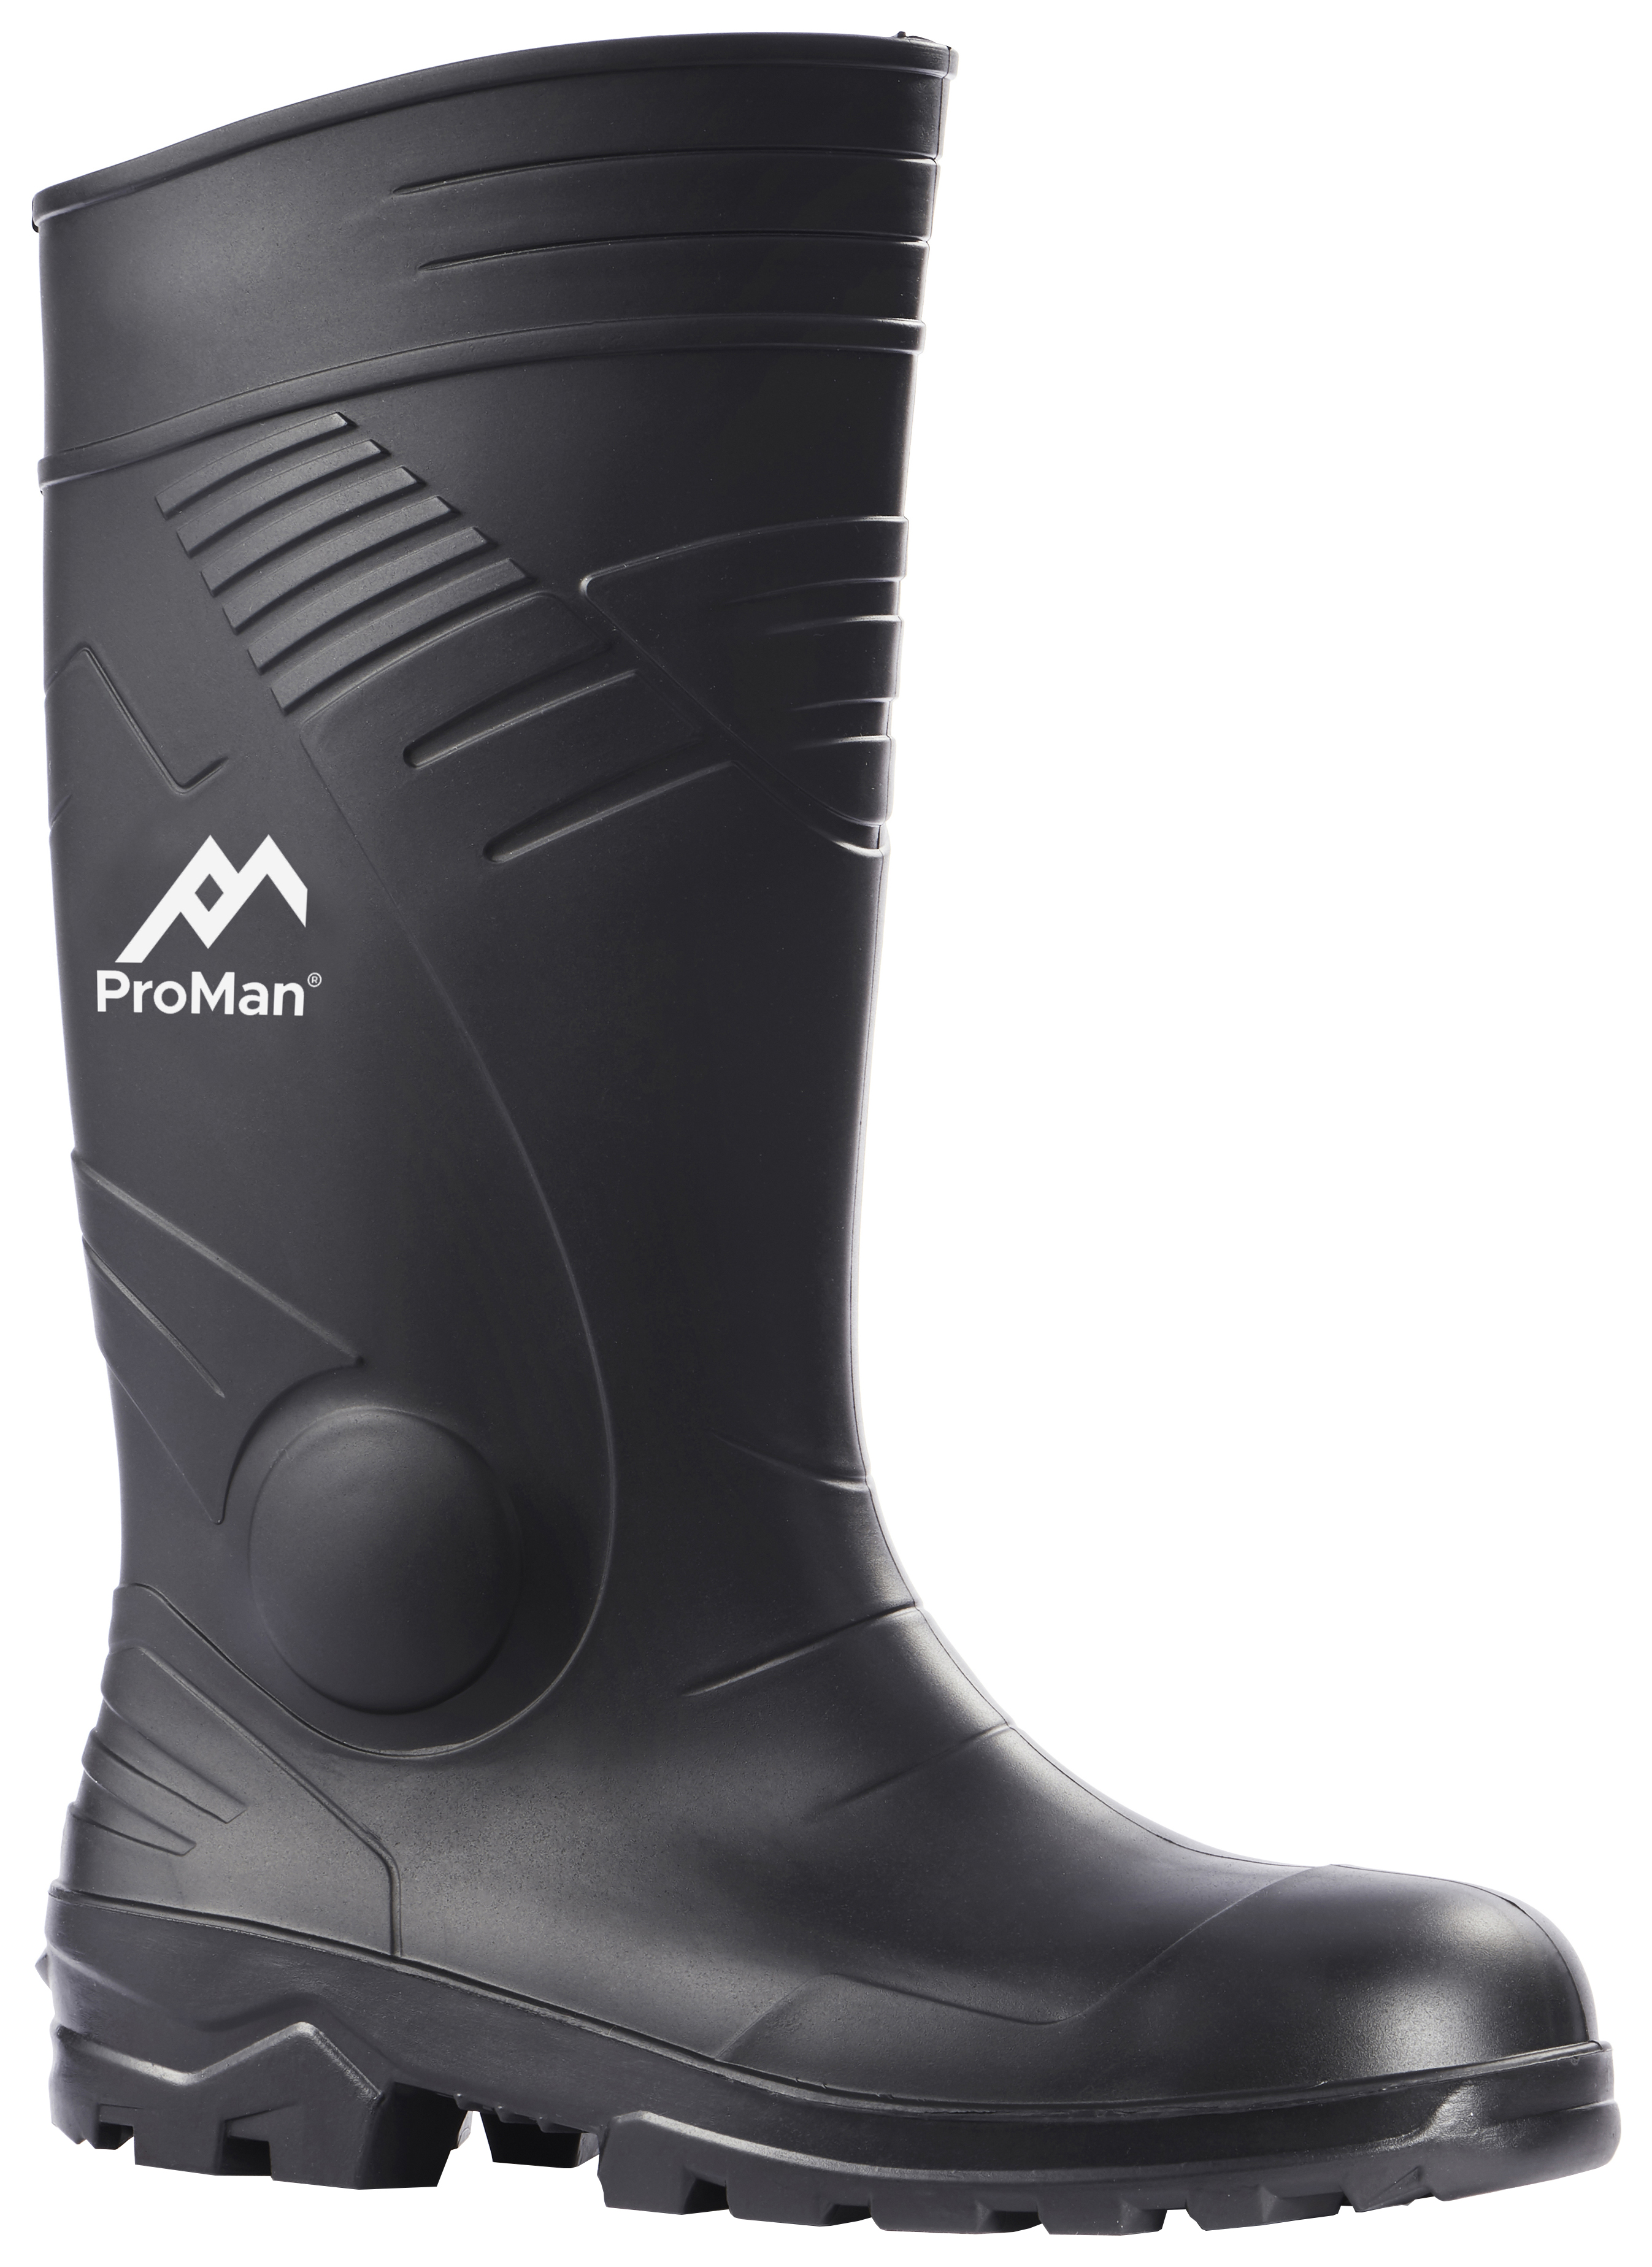 Image of Rokfall Washington Black Safety Wellington Boots - Size 9